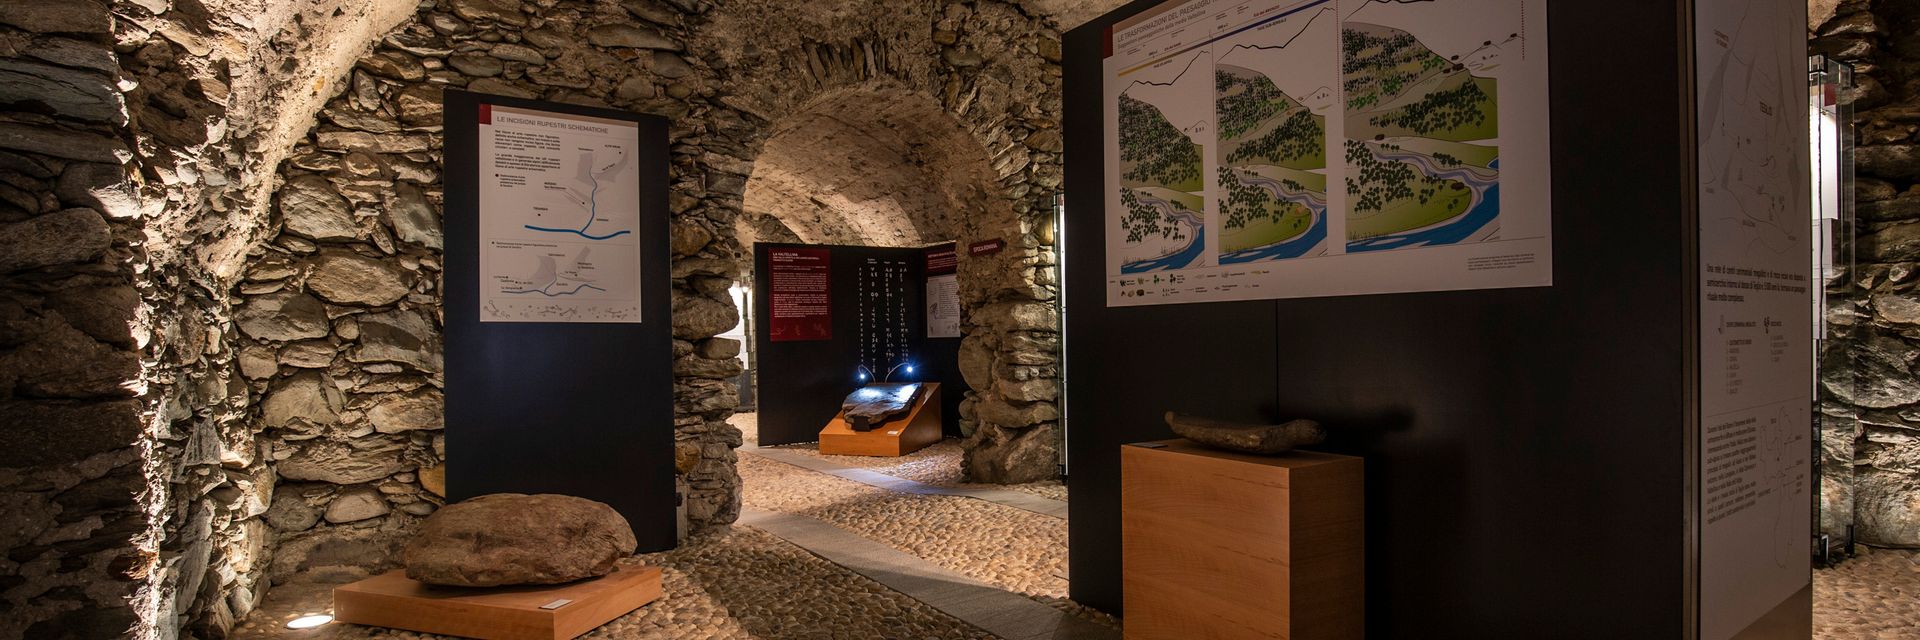 Musée d'histoire et d'art de la Valteline